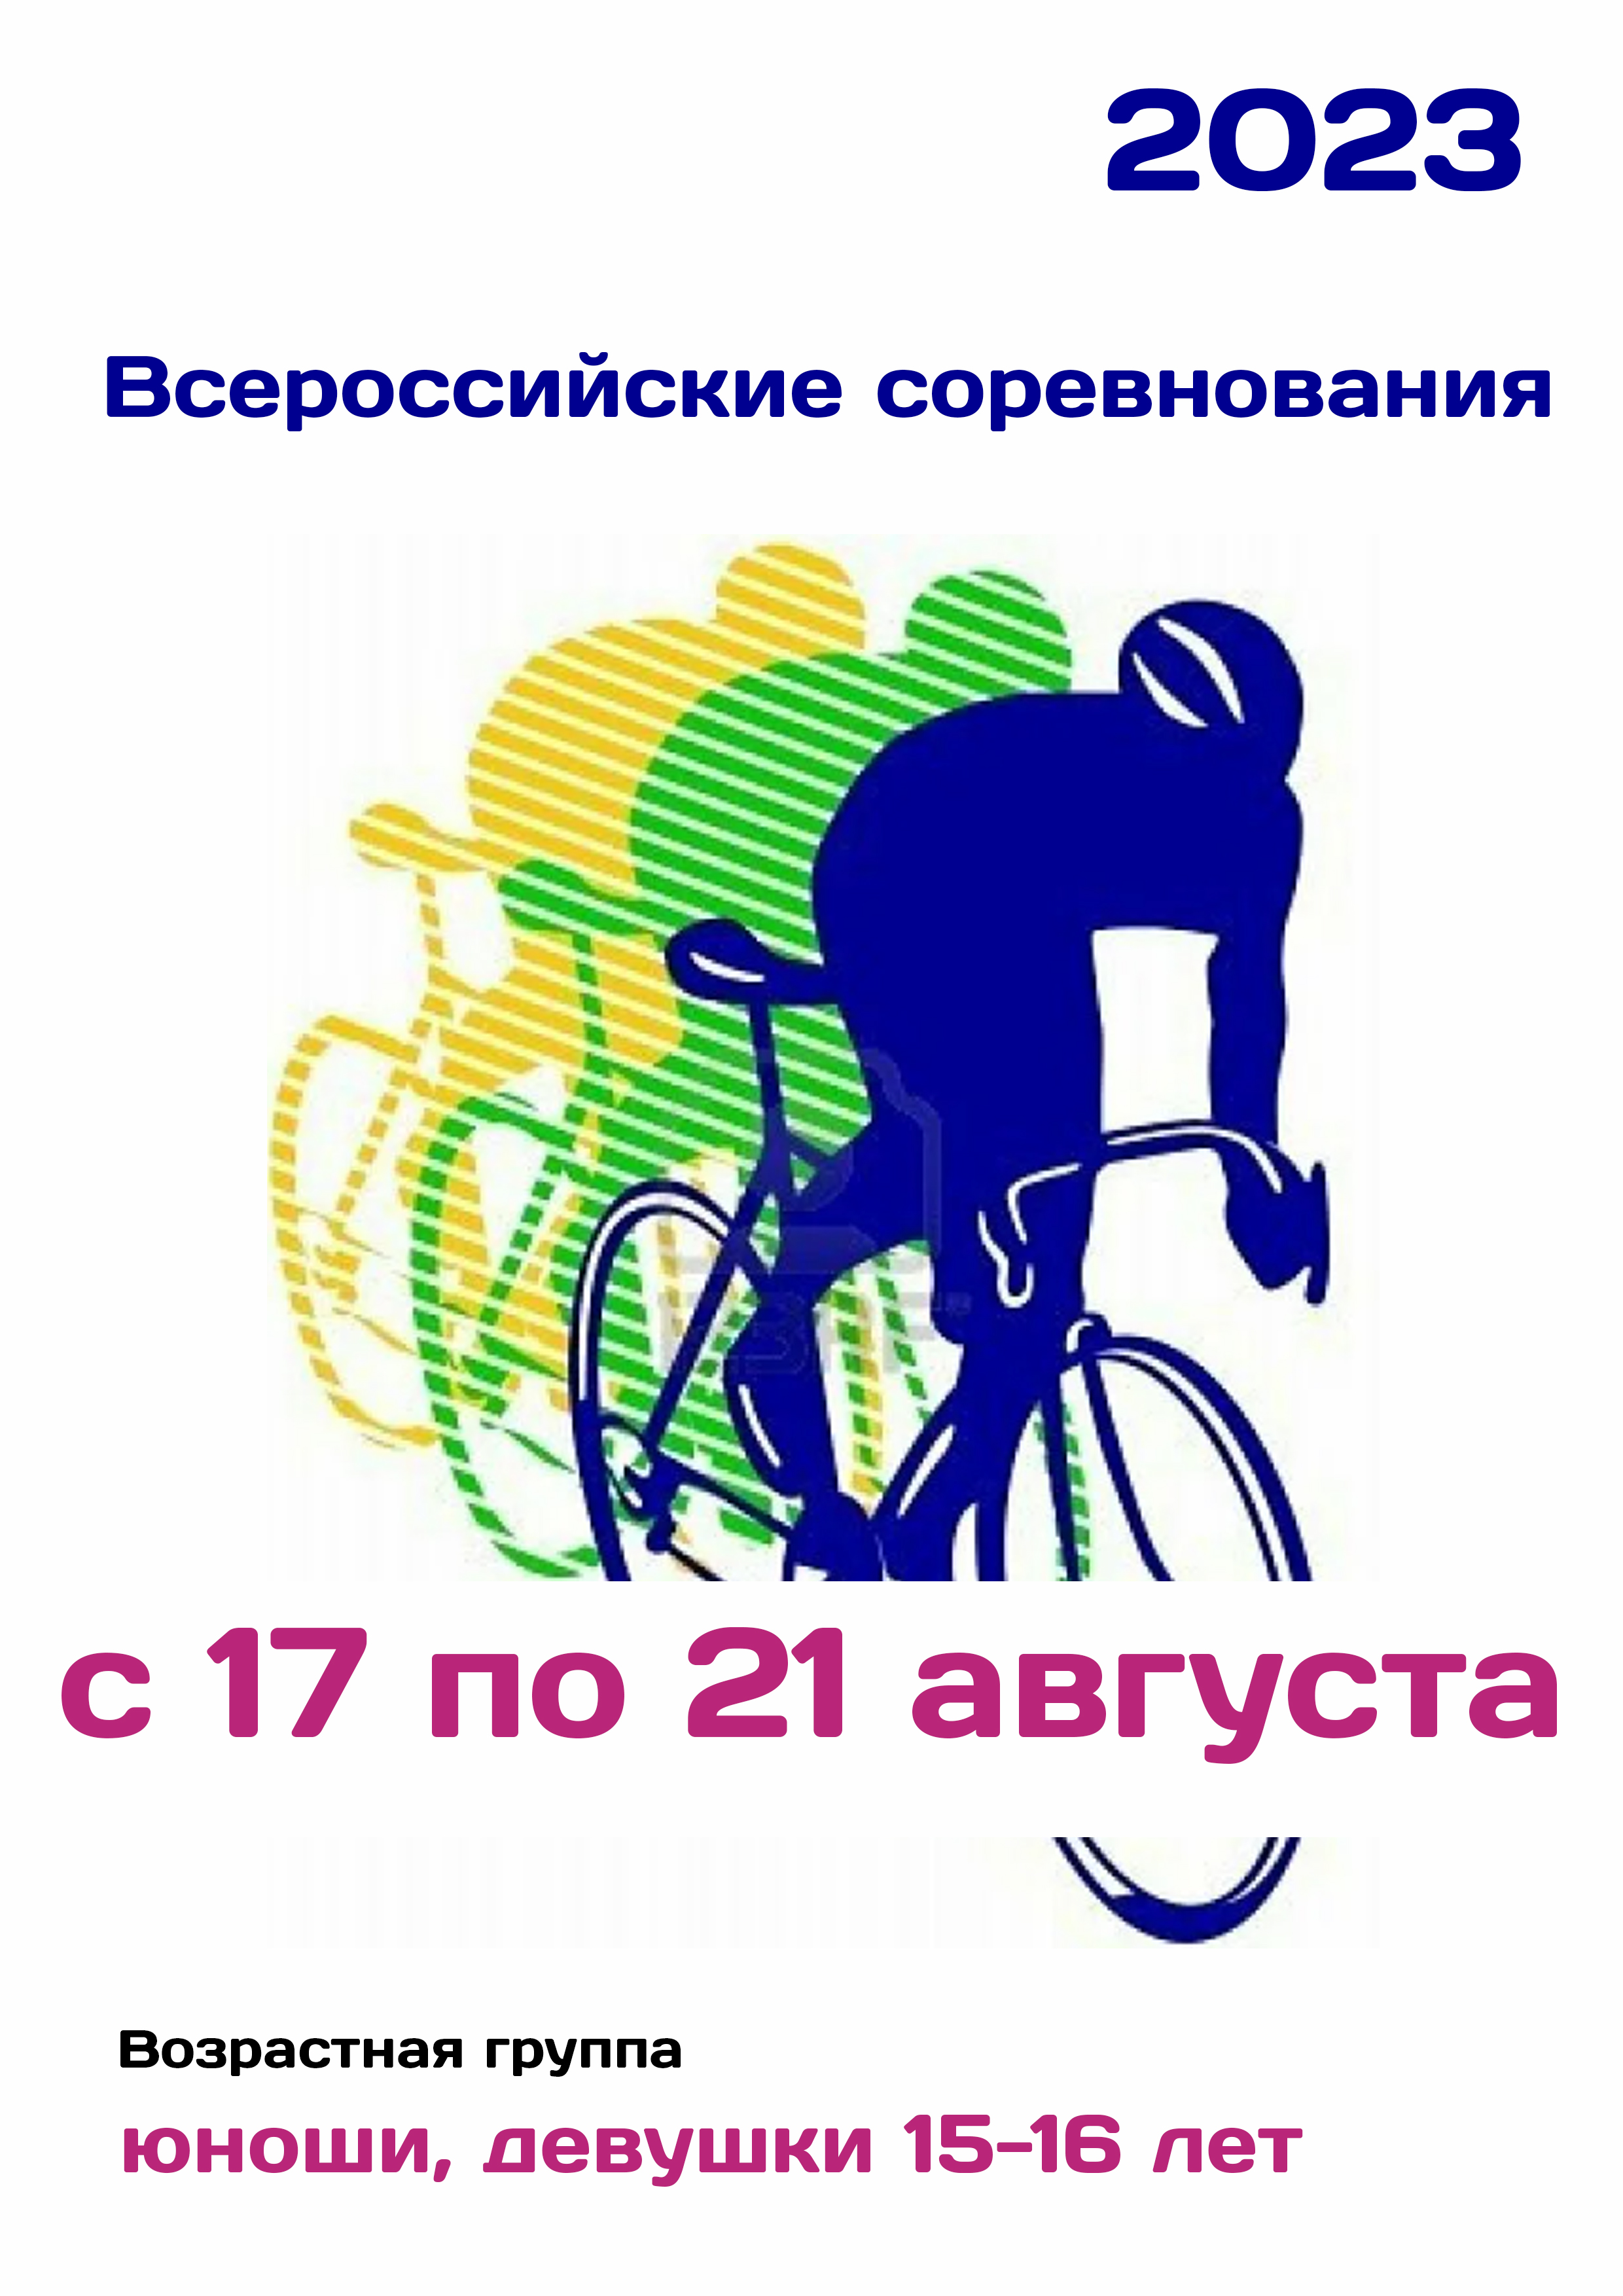 Всероссийские соревнования по велоспорту 17  ខែសីហា
 2023  នៅឆ្នាំ
 